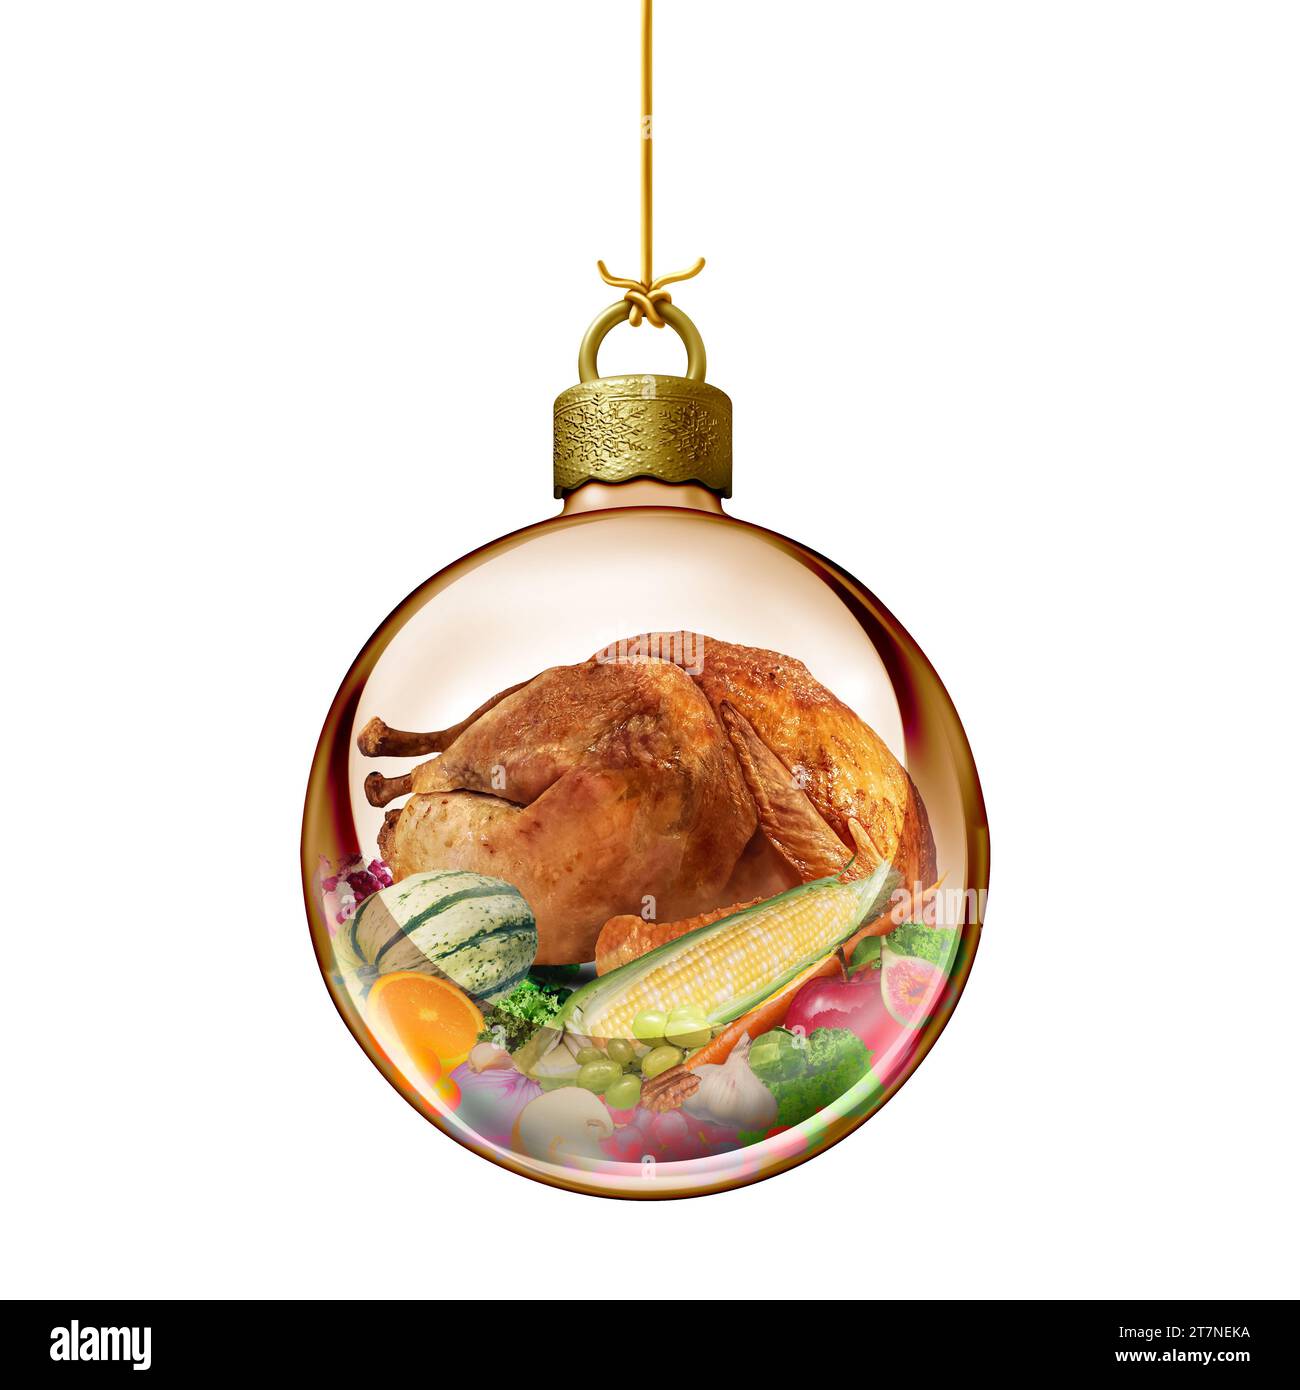 Weihnachtsfeiertag-Food-Symbol und Thanksgiving-Dinner als Glas-Weihnachtskugel-Ornament als saisonales dekoratives Designelement mit traditionellem Stockfoto